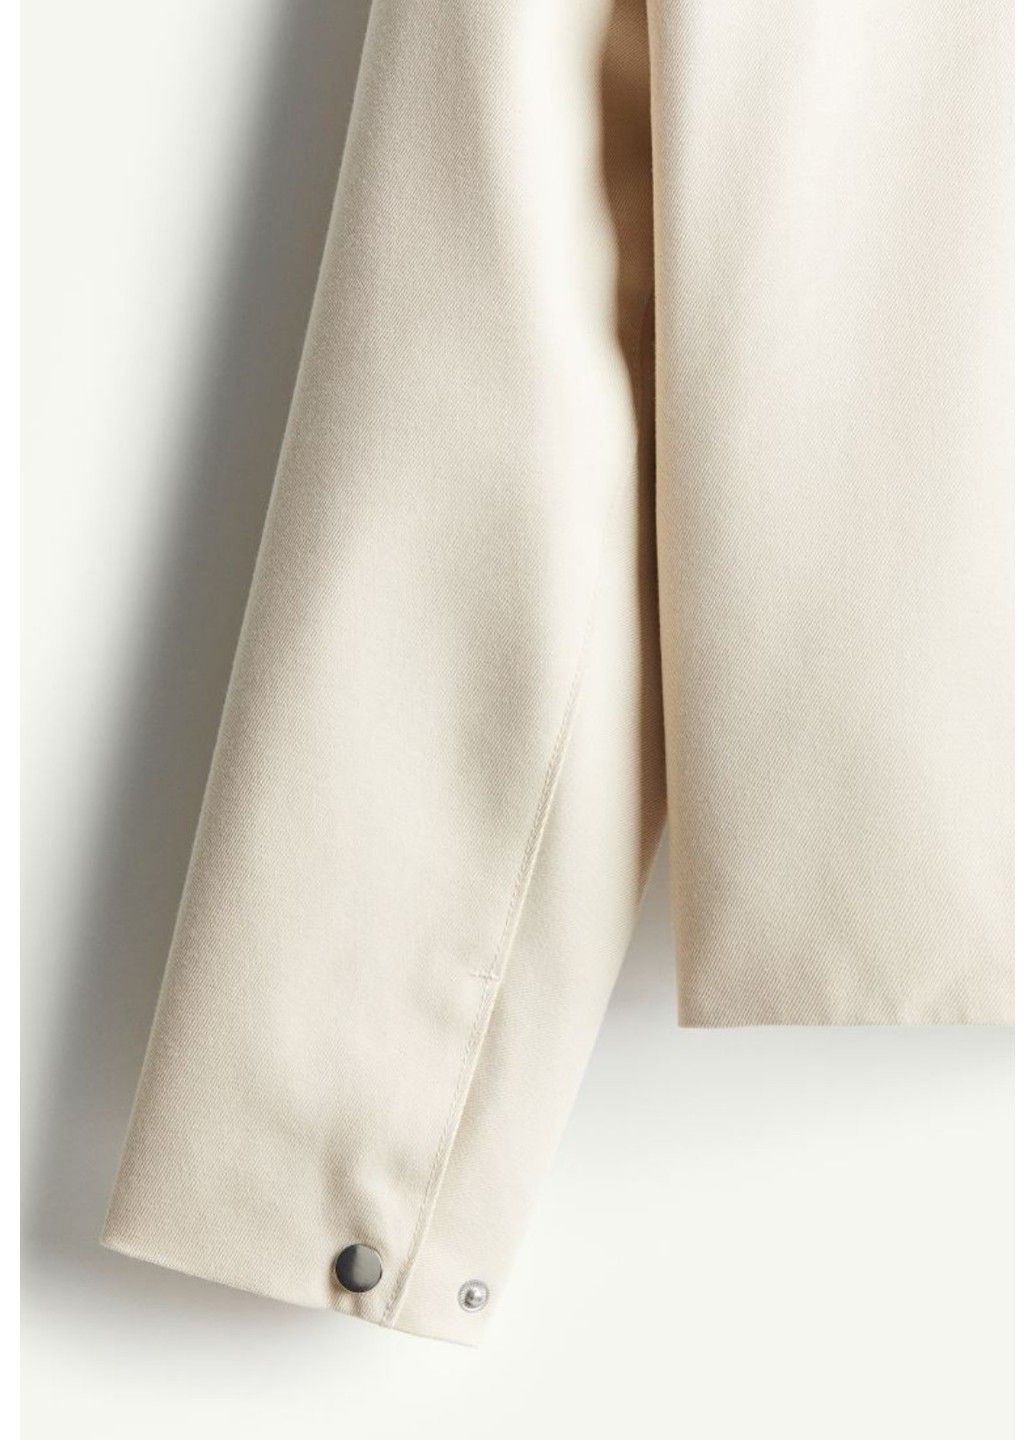 Светло-бежевая мужская куртка стандартного кроя н&м (56828) s светло-бежевая H&M